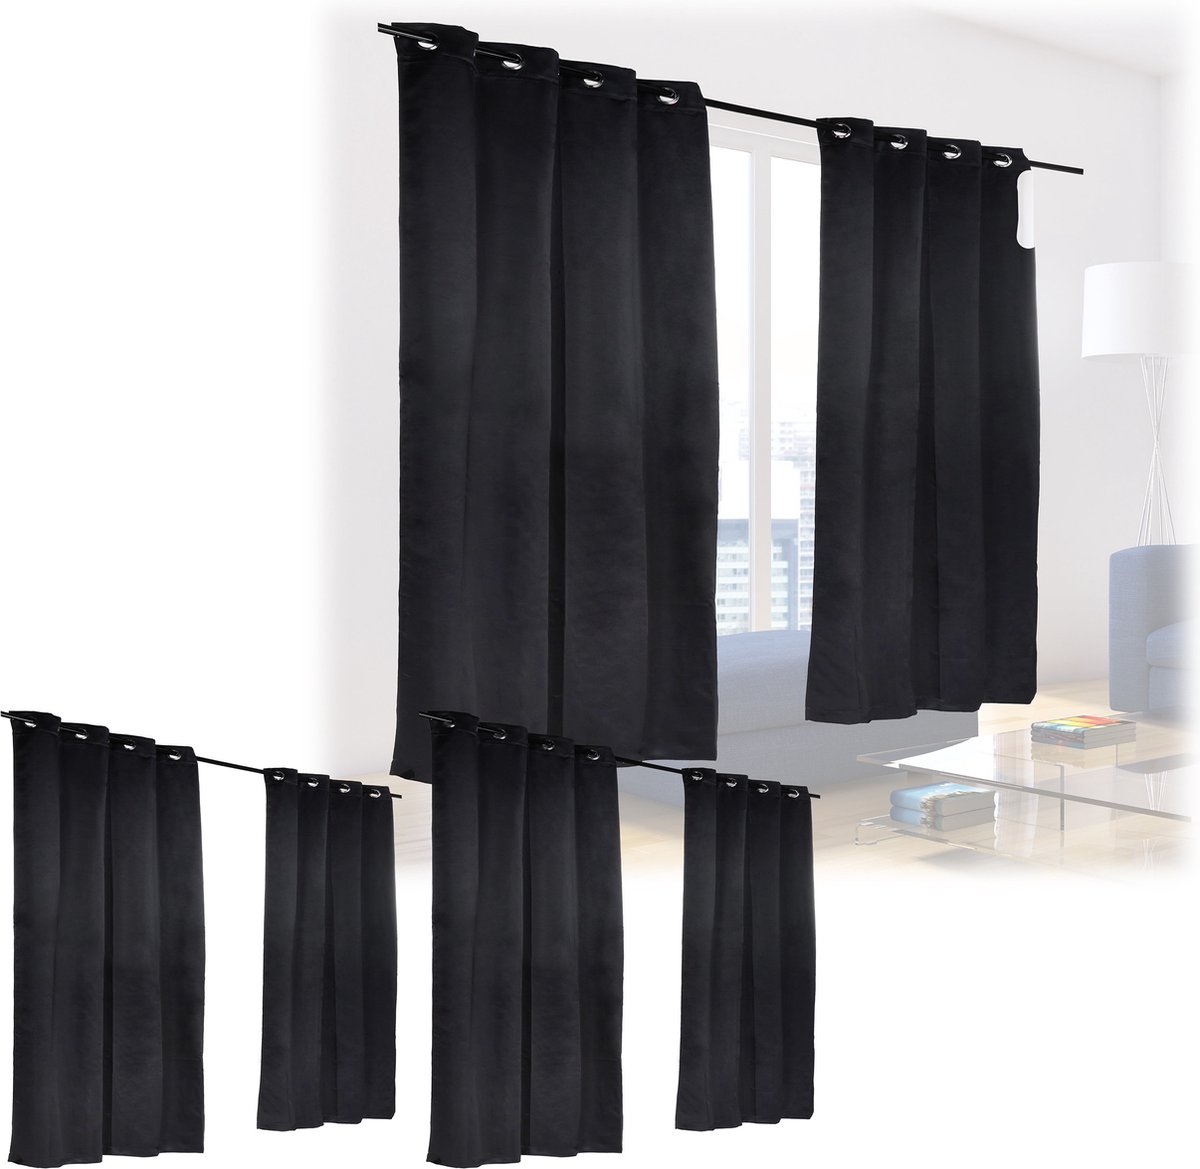 Relaxdays 6 x verduisterende gordijnen - zwart - kant en klaar - gordijn set - 245x135 cm